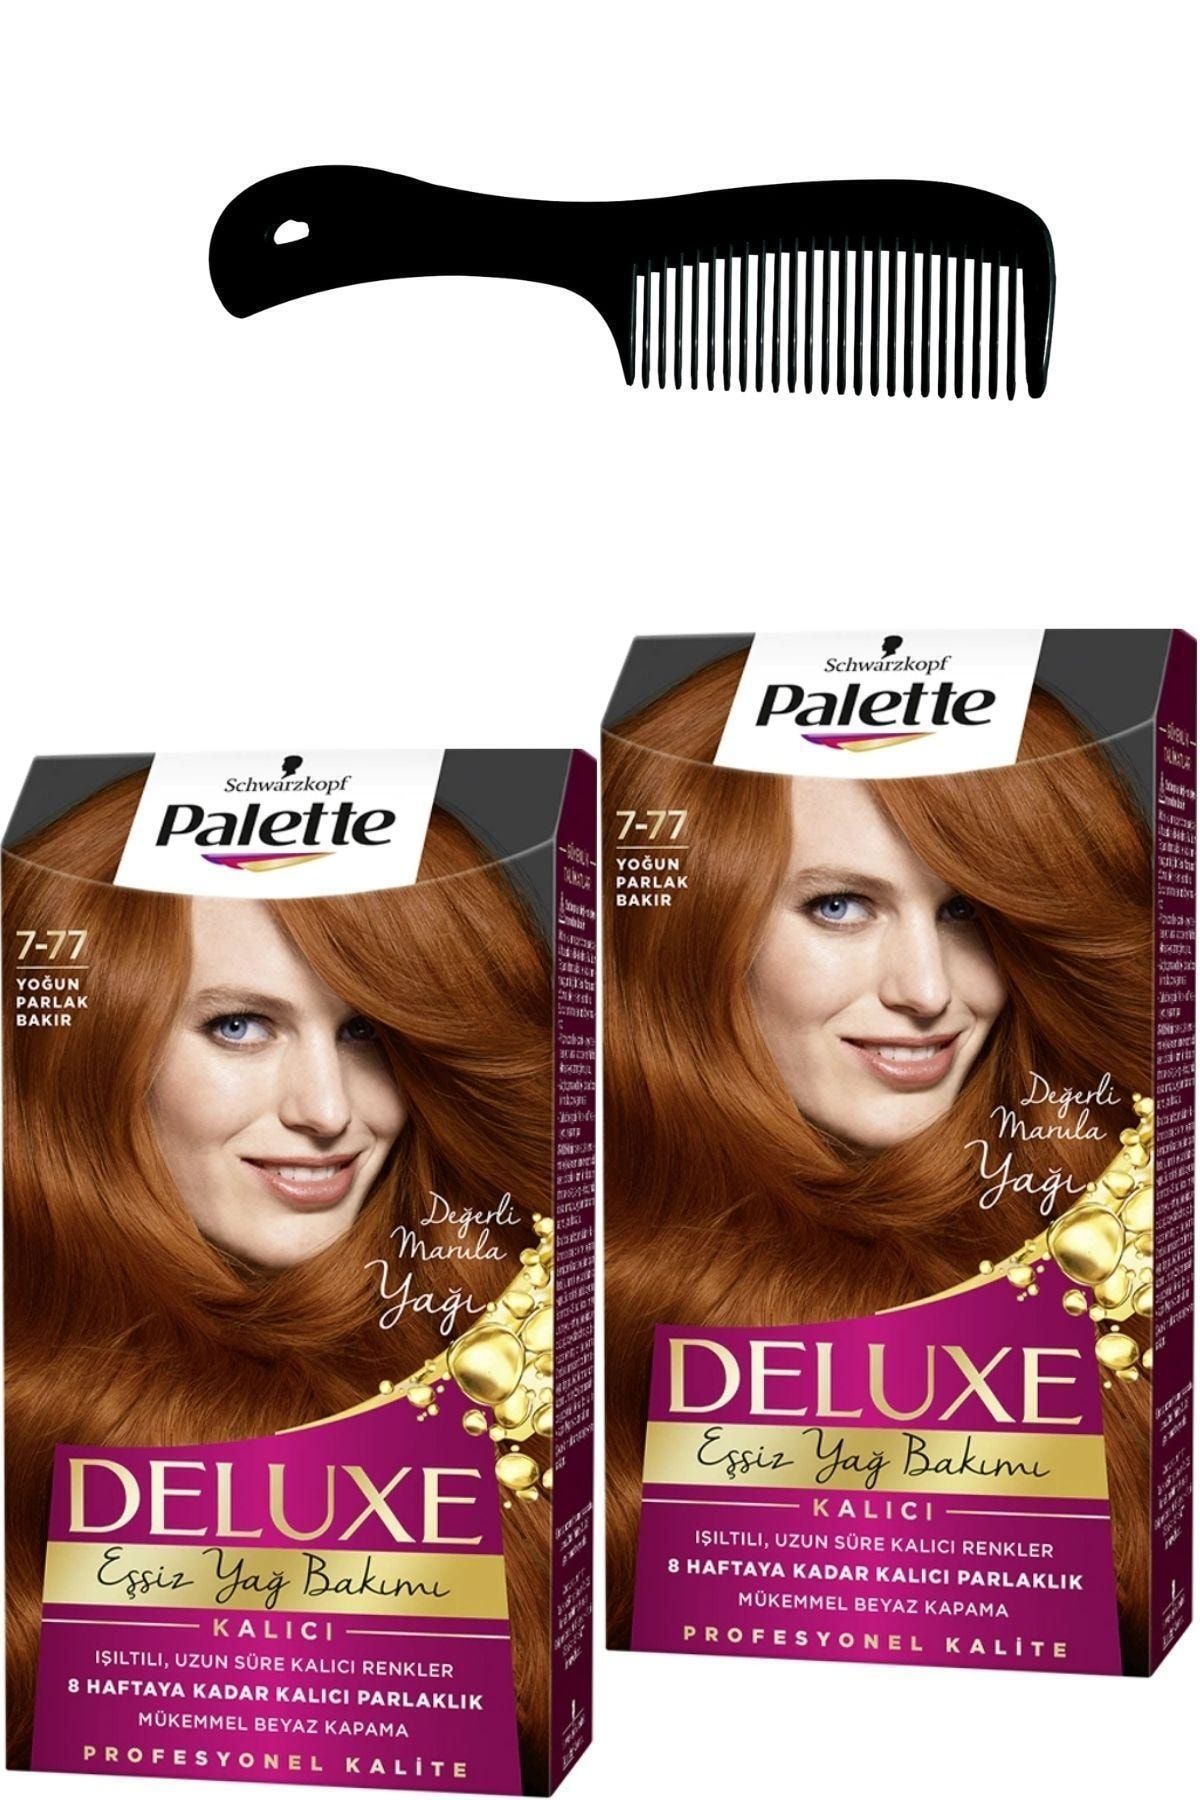 Palette Deluxe Saç Boyası 7-77 Yoğun Parlak Bakır X 2 Adet + Saç Açıcı Tarak